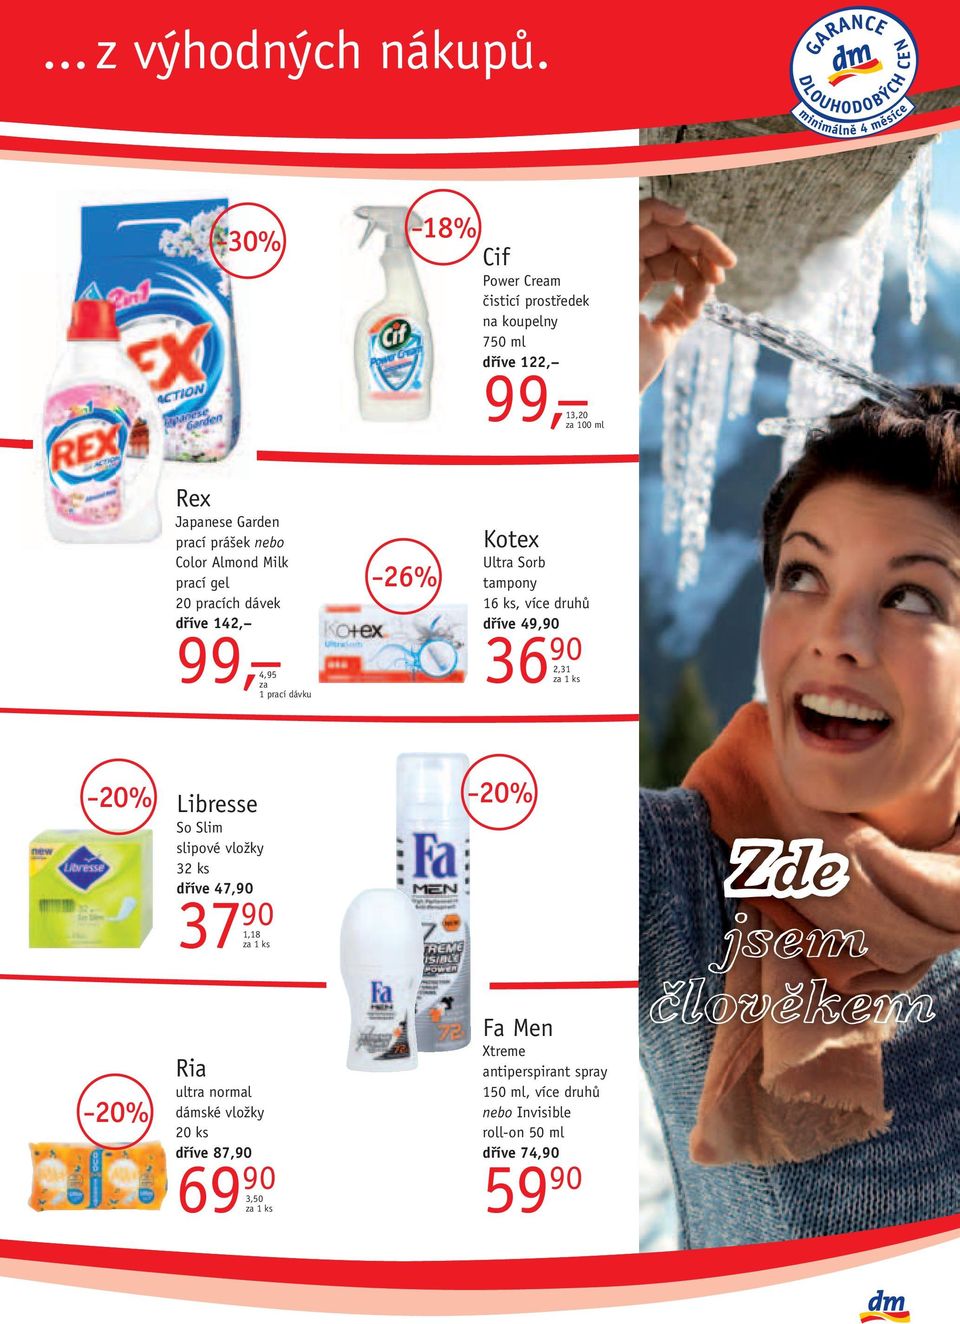 Almond Milk prací gel 20 pracích dávek dříve 142, 99, 4,95 za 1 prací dávku 26% Kotex Ultra Sorb tampony 16 ks, více druhů dříve